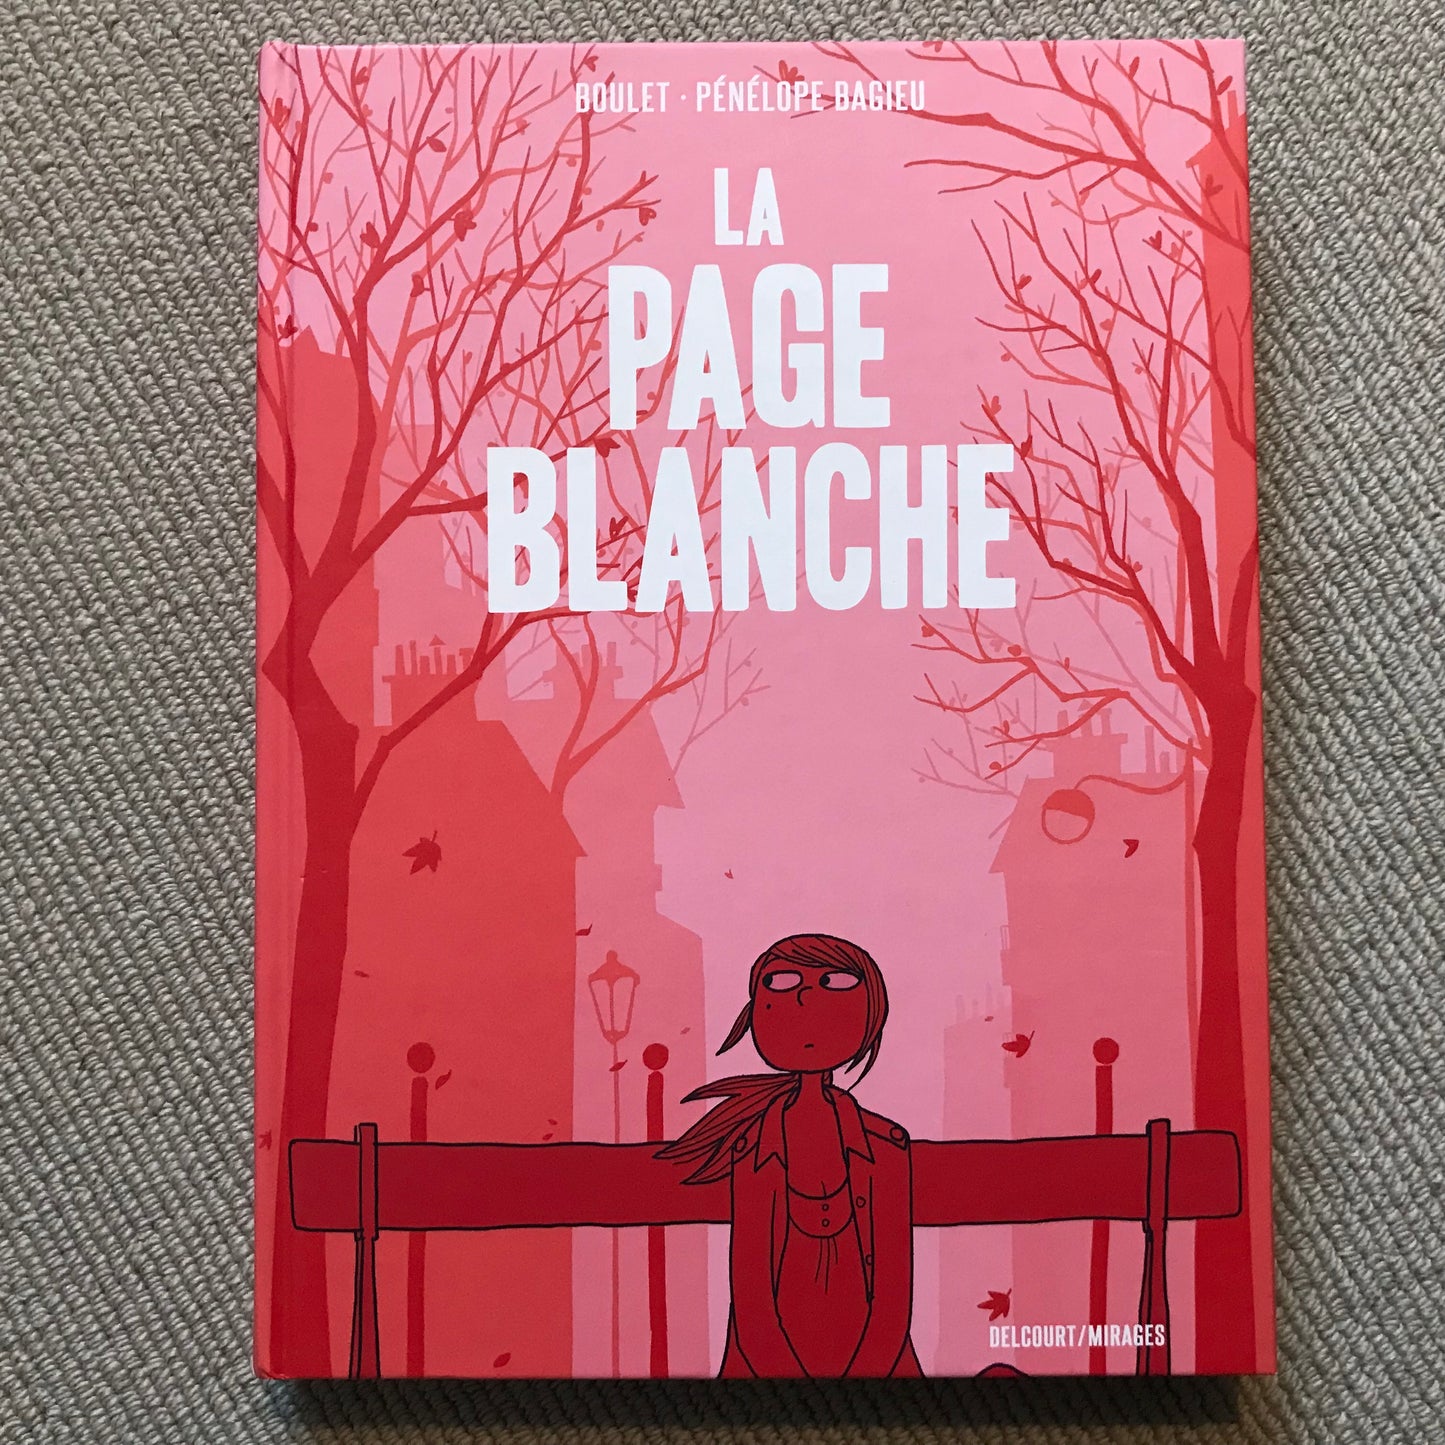 Bagieu, Pénélope & Boulet - La page blanche